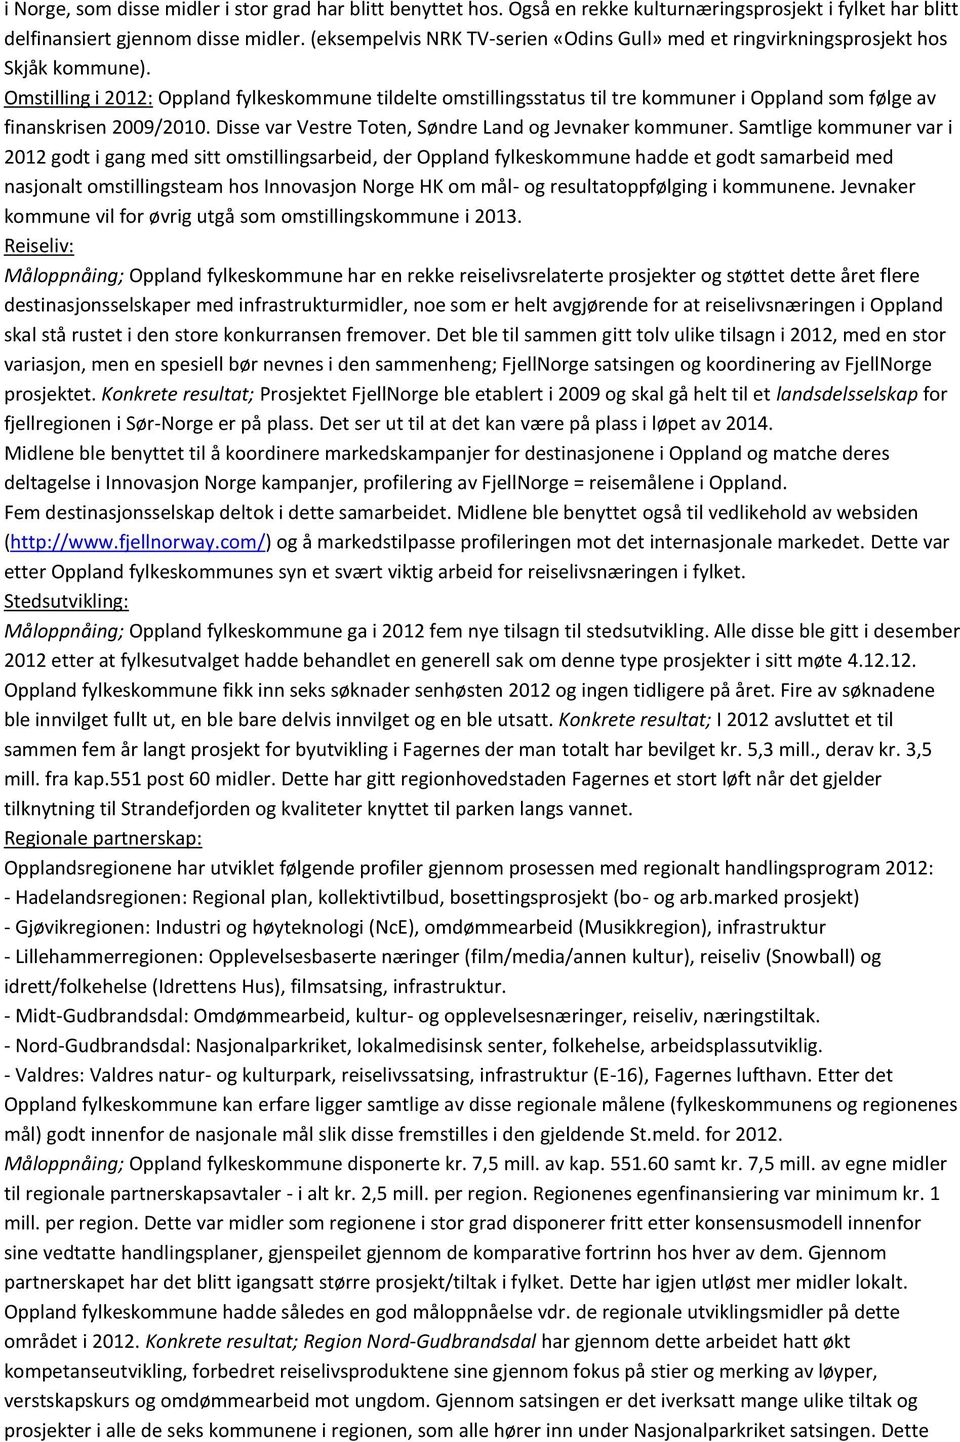 Omstilling i 2012: Oppland fylkeskommune tildelte omstillingsstatus til tre kommuner i Oppland som følge av finanskrisen 2009/2010. Disse var Vestre Toten, Søndre Land og Jevnaker kommuner.